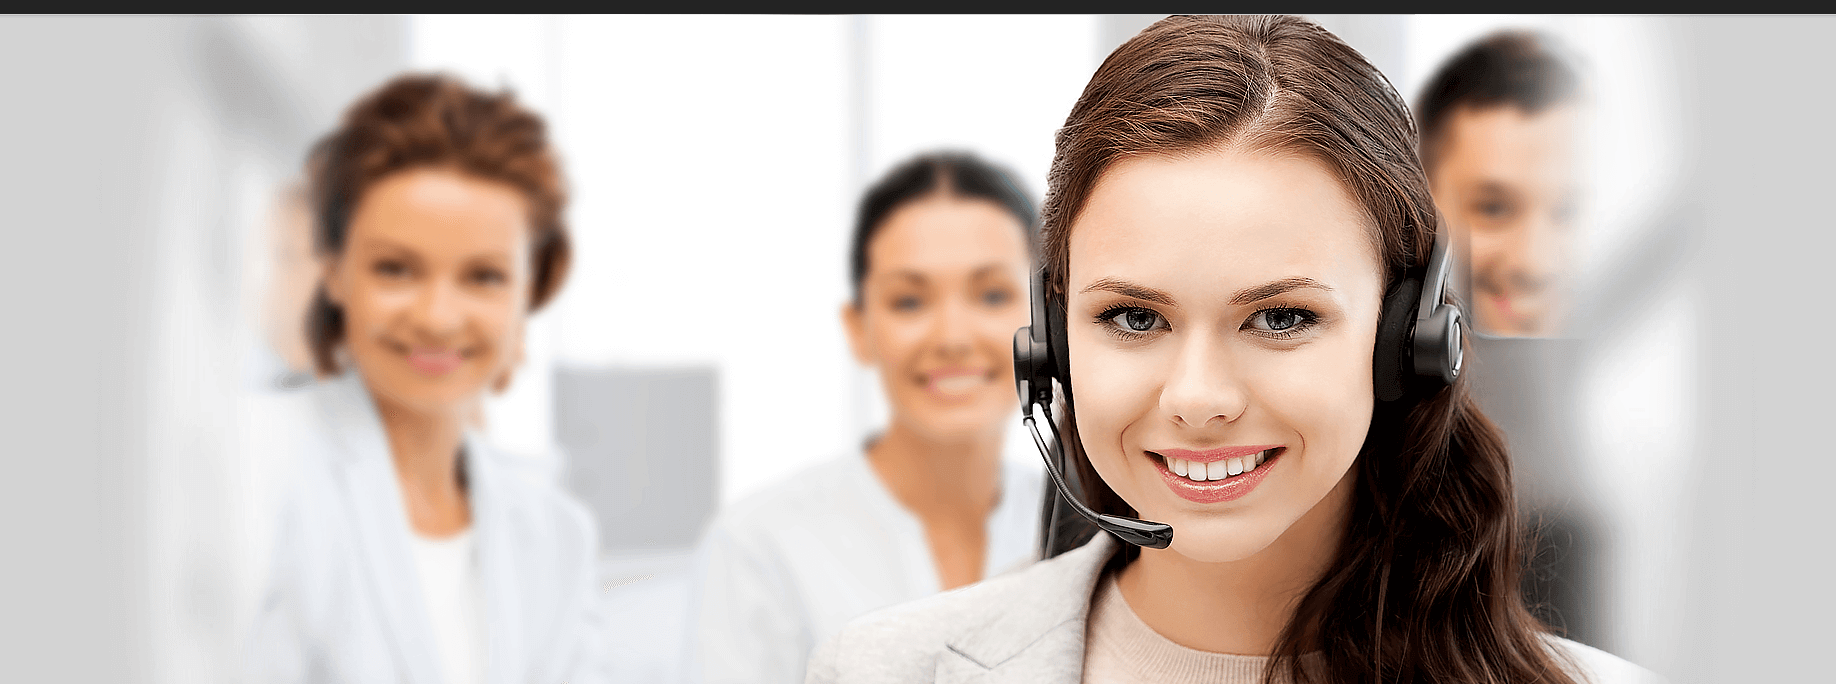 PROXI TEL - Votre centre d'appels Experts en sous-traitance | Call Center | Call Center Outsourcing | Call Centers | Call Center Agencies